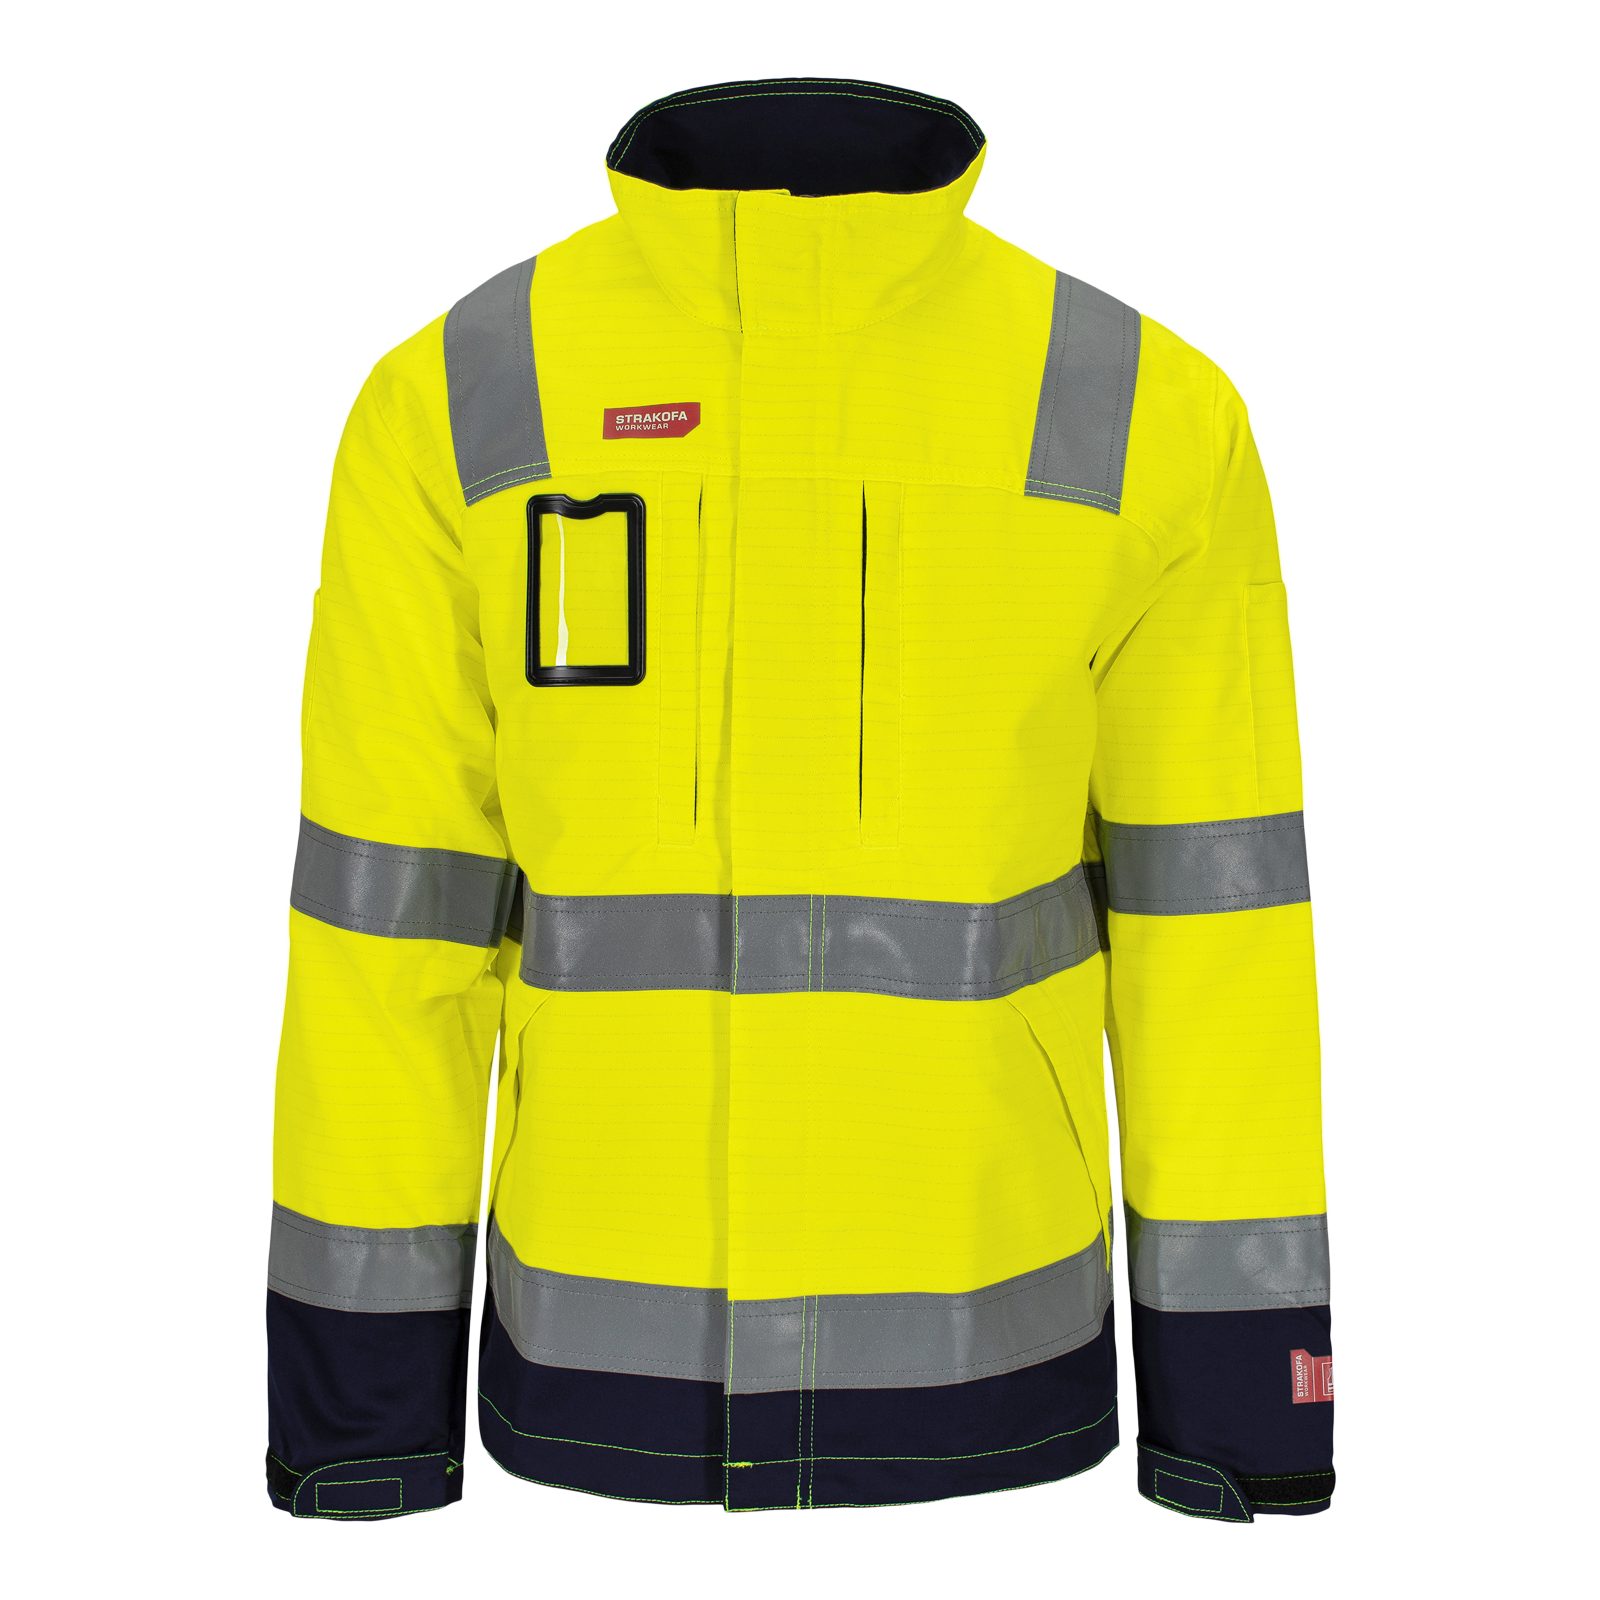 El-line multinorm jakke, klasse 3 (2502225)